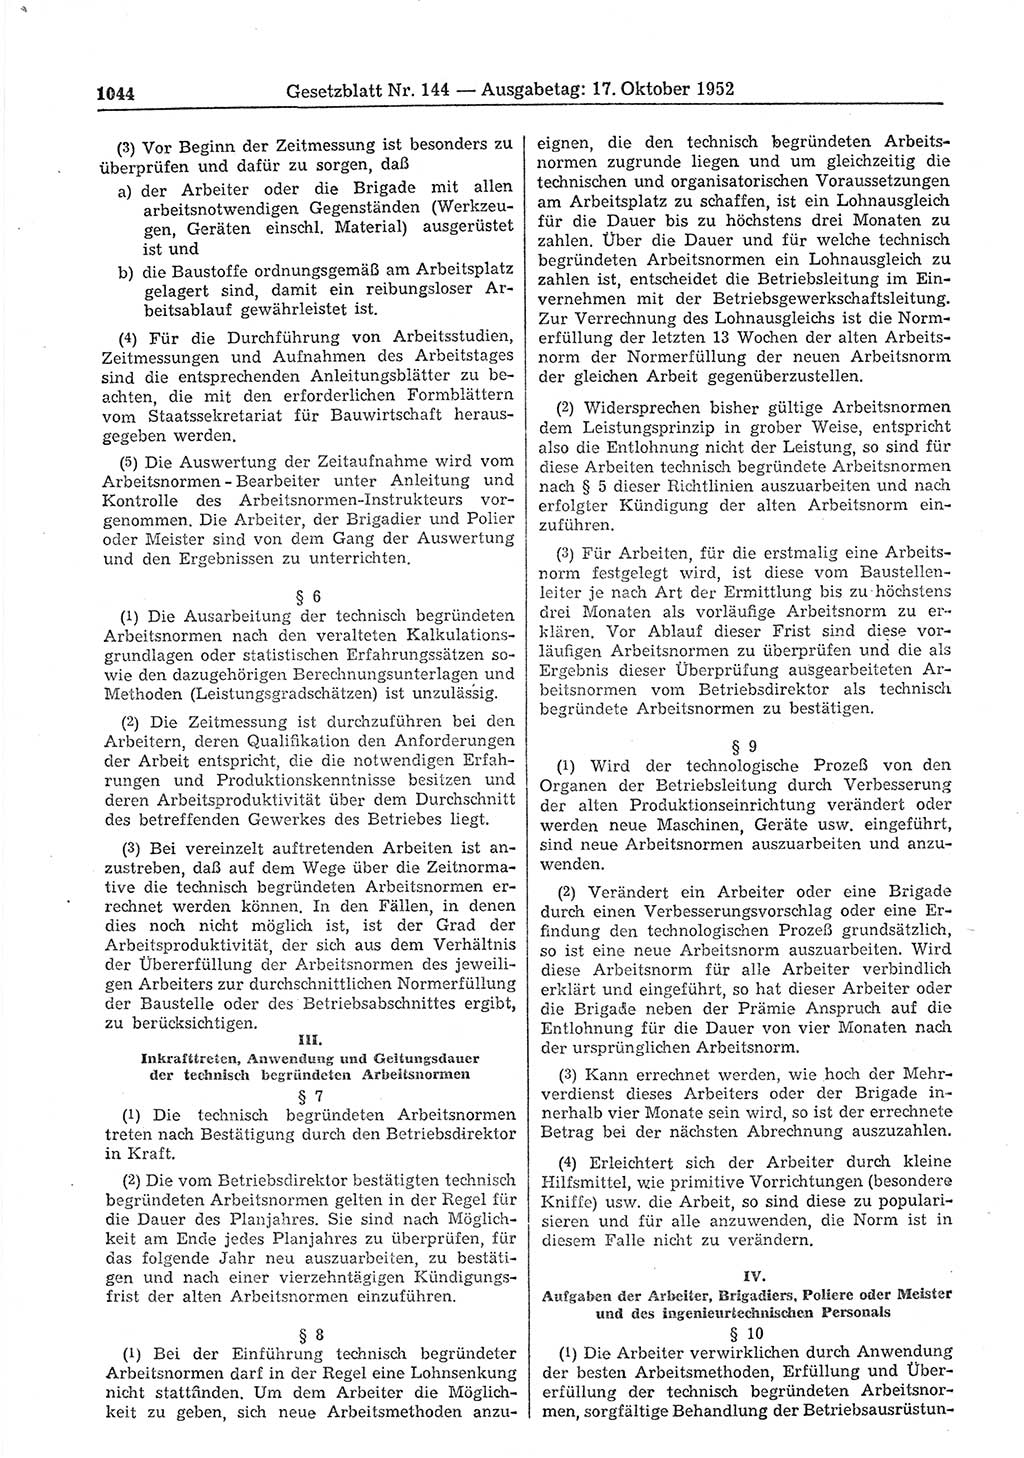 Gesetzblatt (GBl.) der Deutschen Demokratischen Republik (DDR) 1952, Seite 1044 (GBl. DDR 1952, S. 1044)